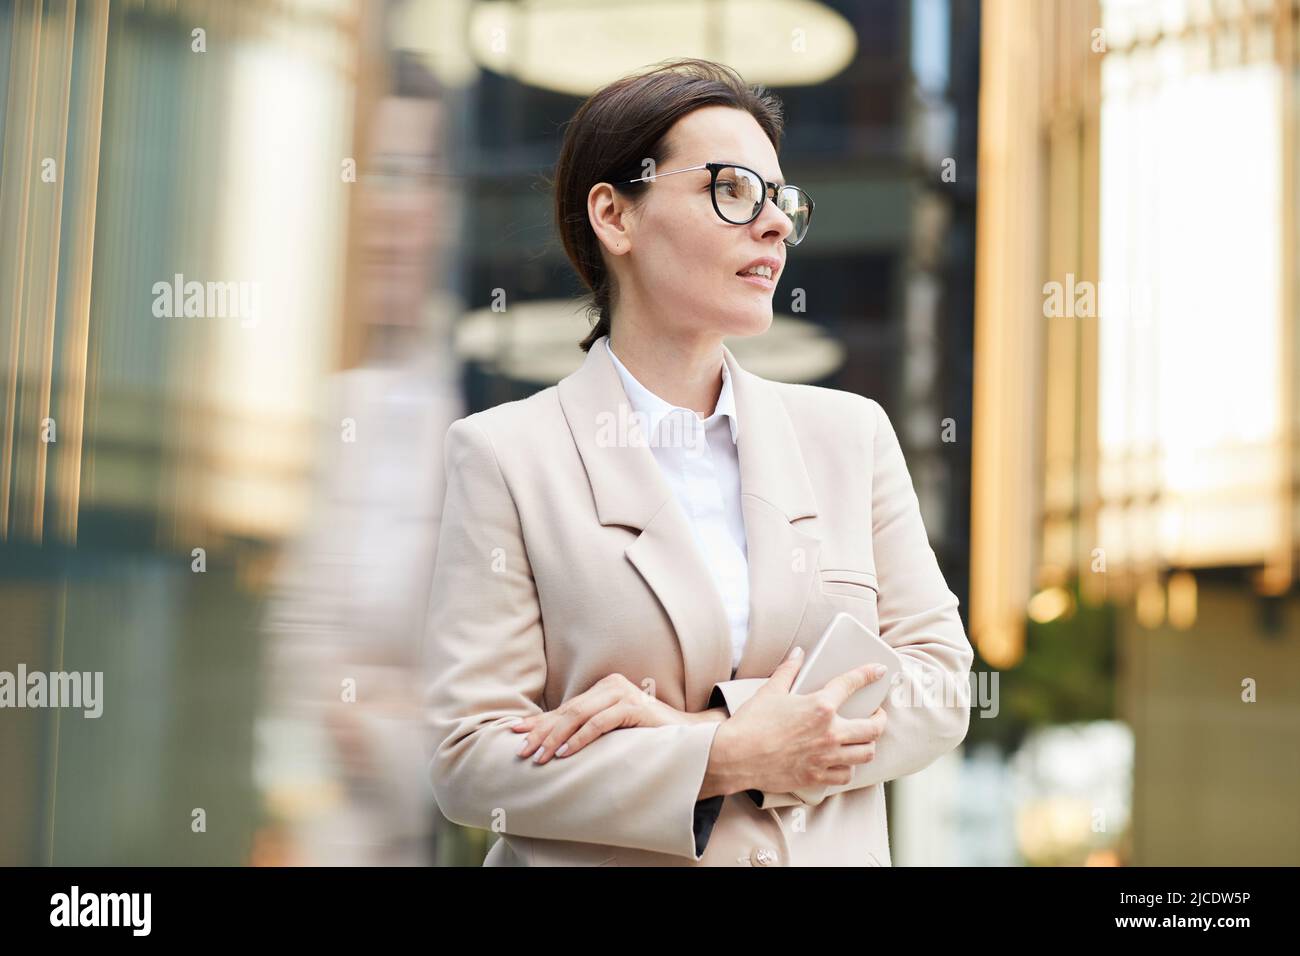 Eine zielgerichtete, attraktive Geschäftsfrau mittleren Alters in stilvoller Jacke, die in der Lobby steht und das Smartphone hält, während sie auf einen Kollegen wartet Stockfoto